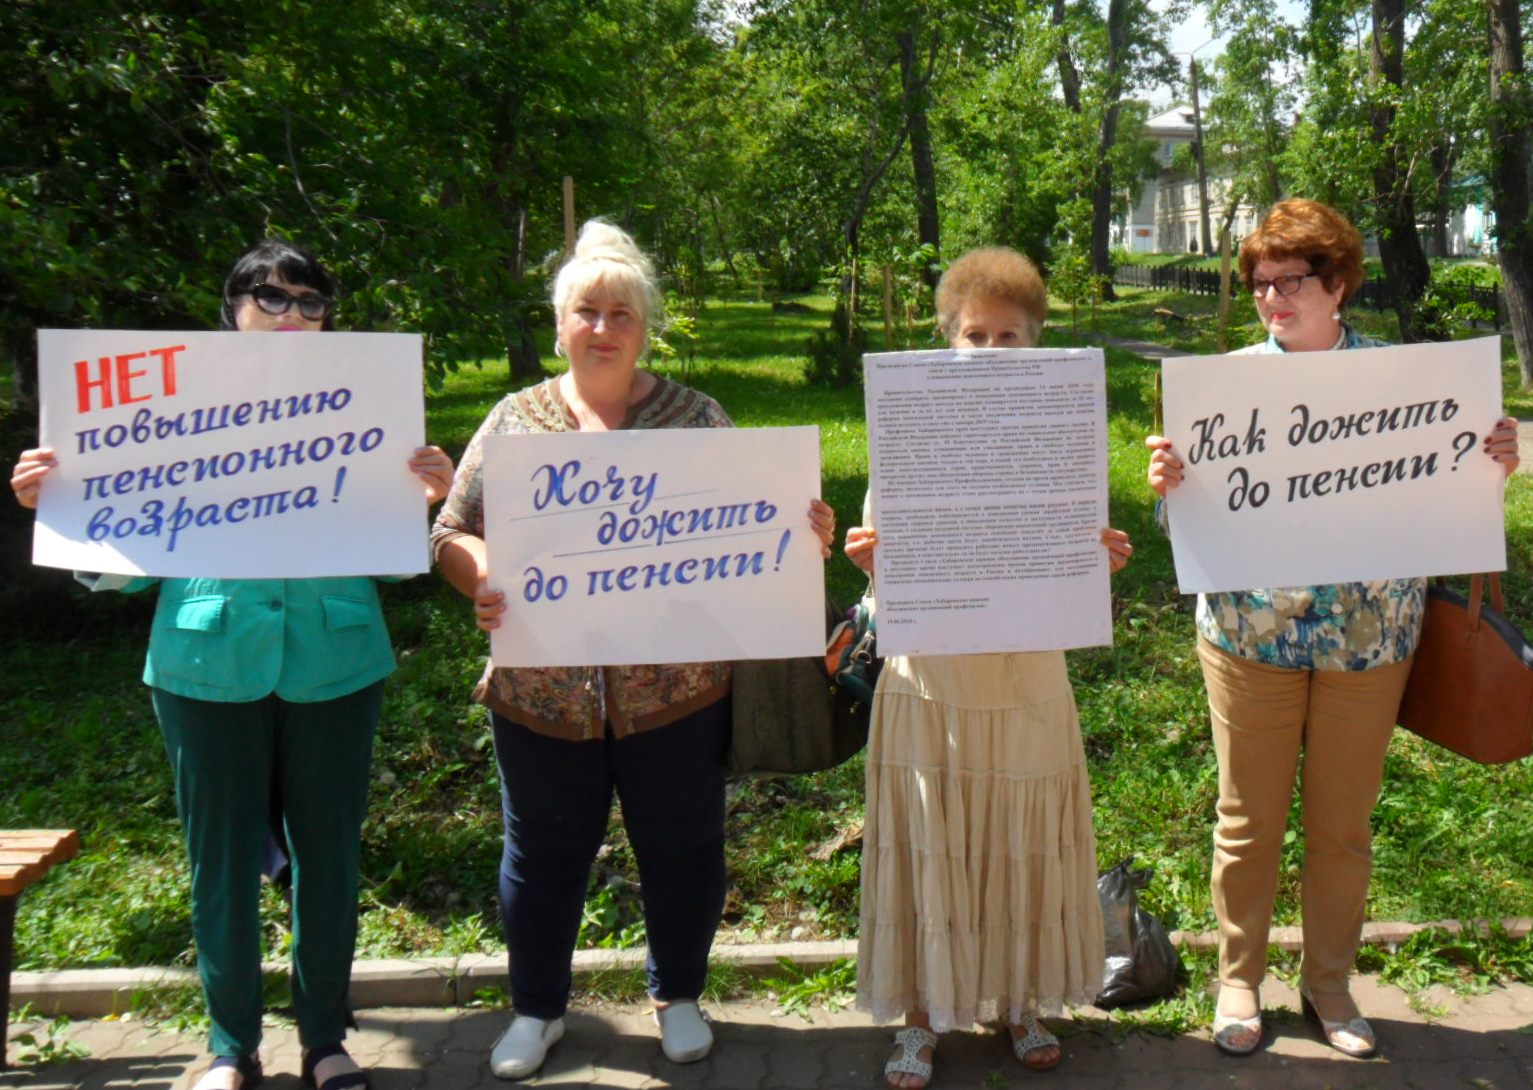 Пикет против повышения пенсионного возраста провели профсоюзы Николаевска-на-Амуре